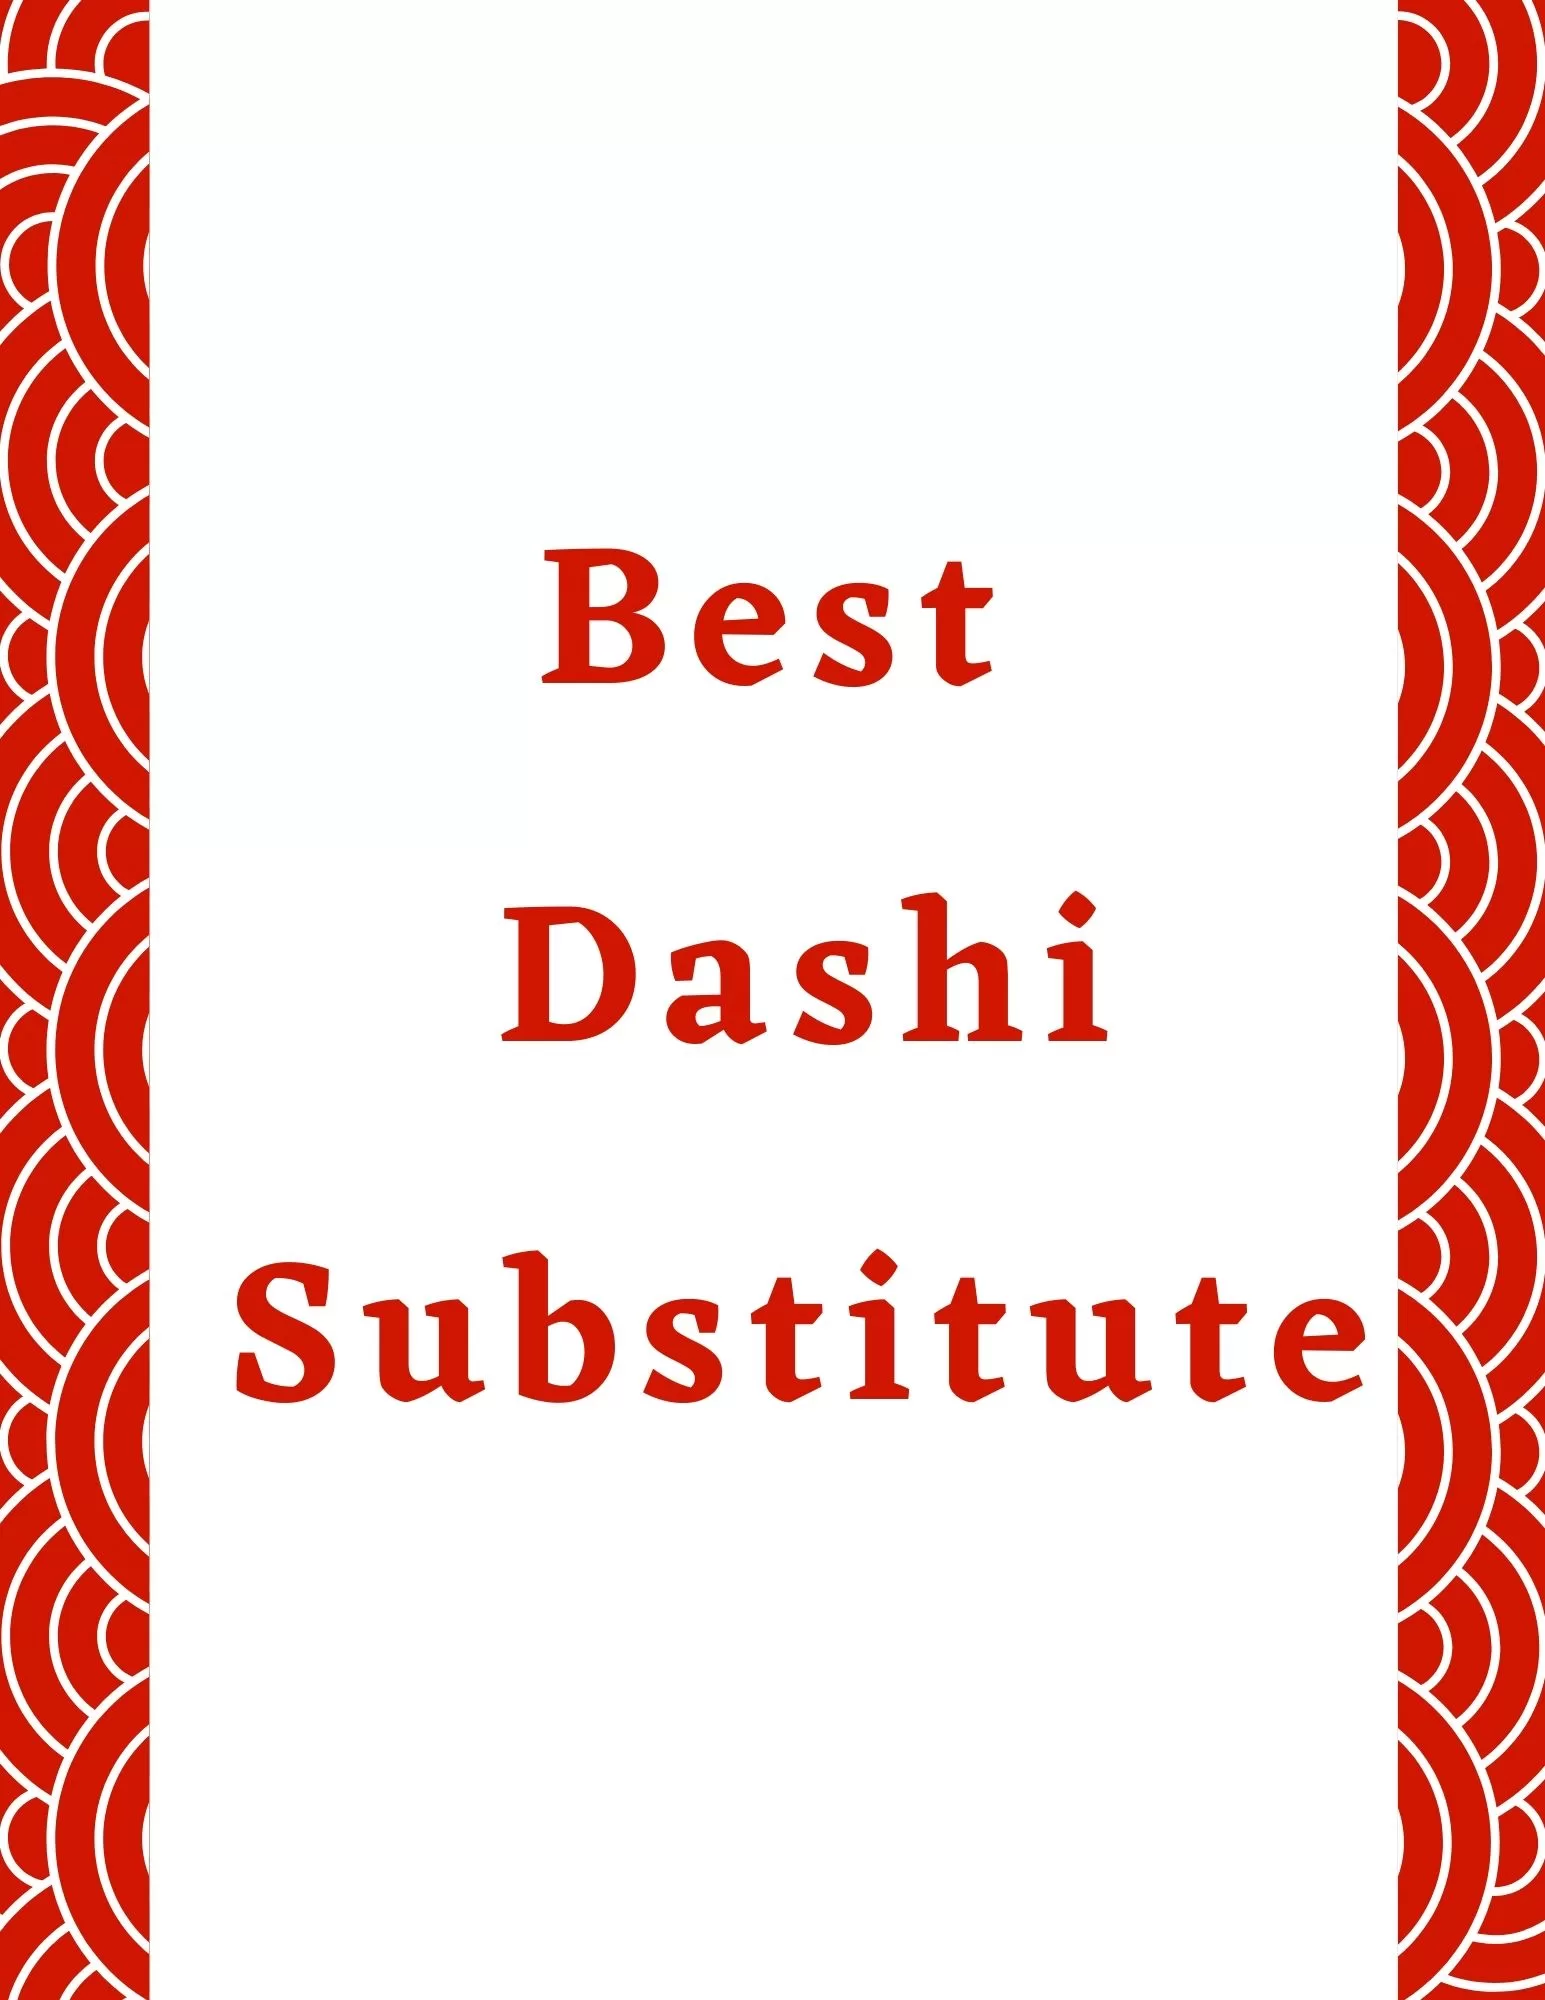 dashi substitute